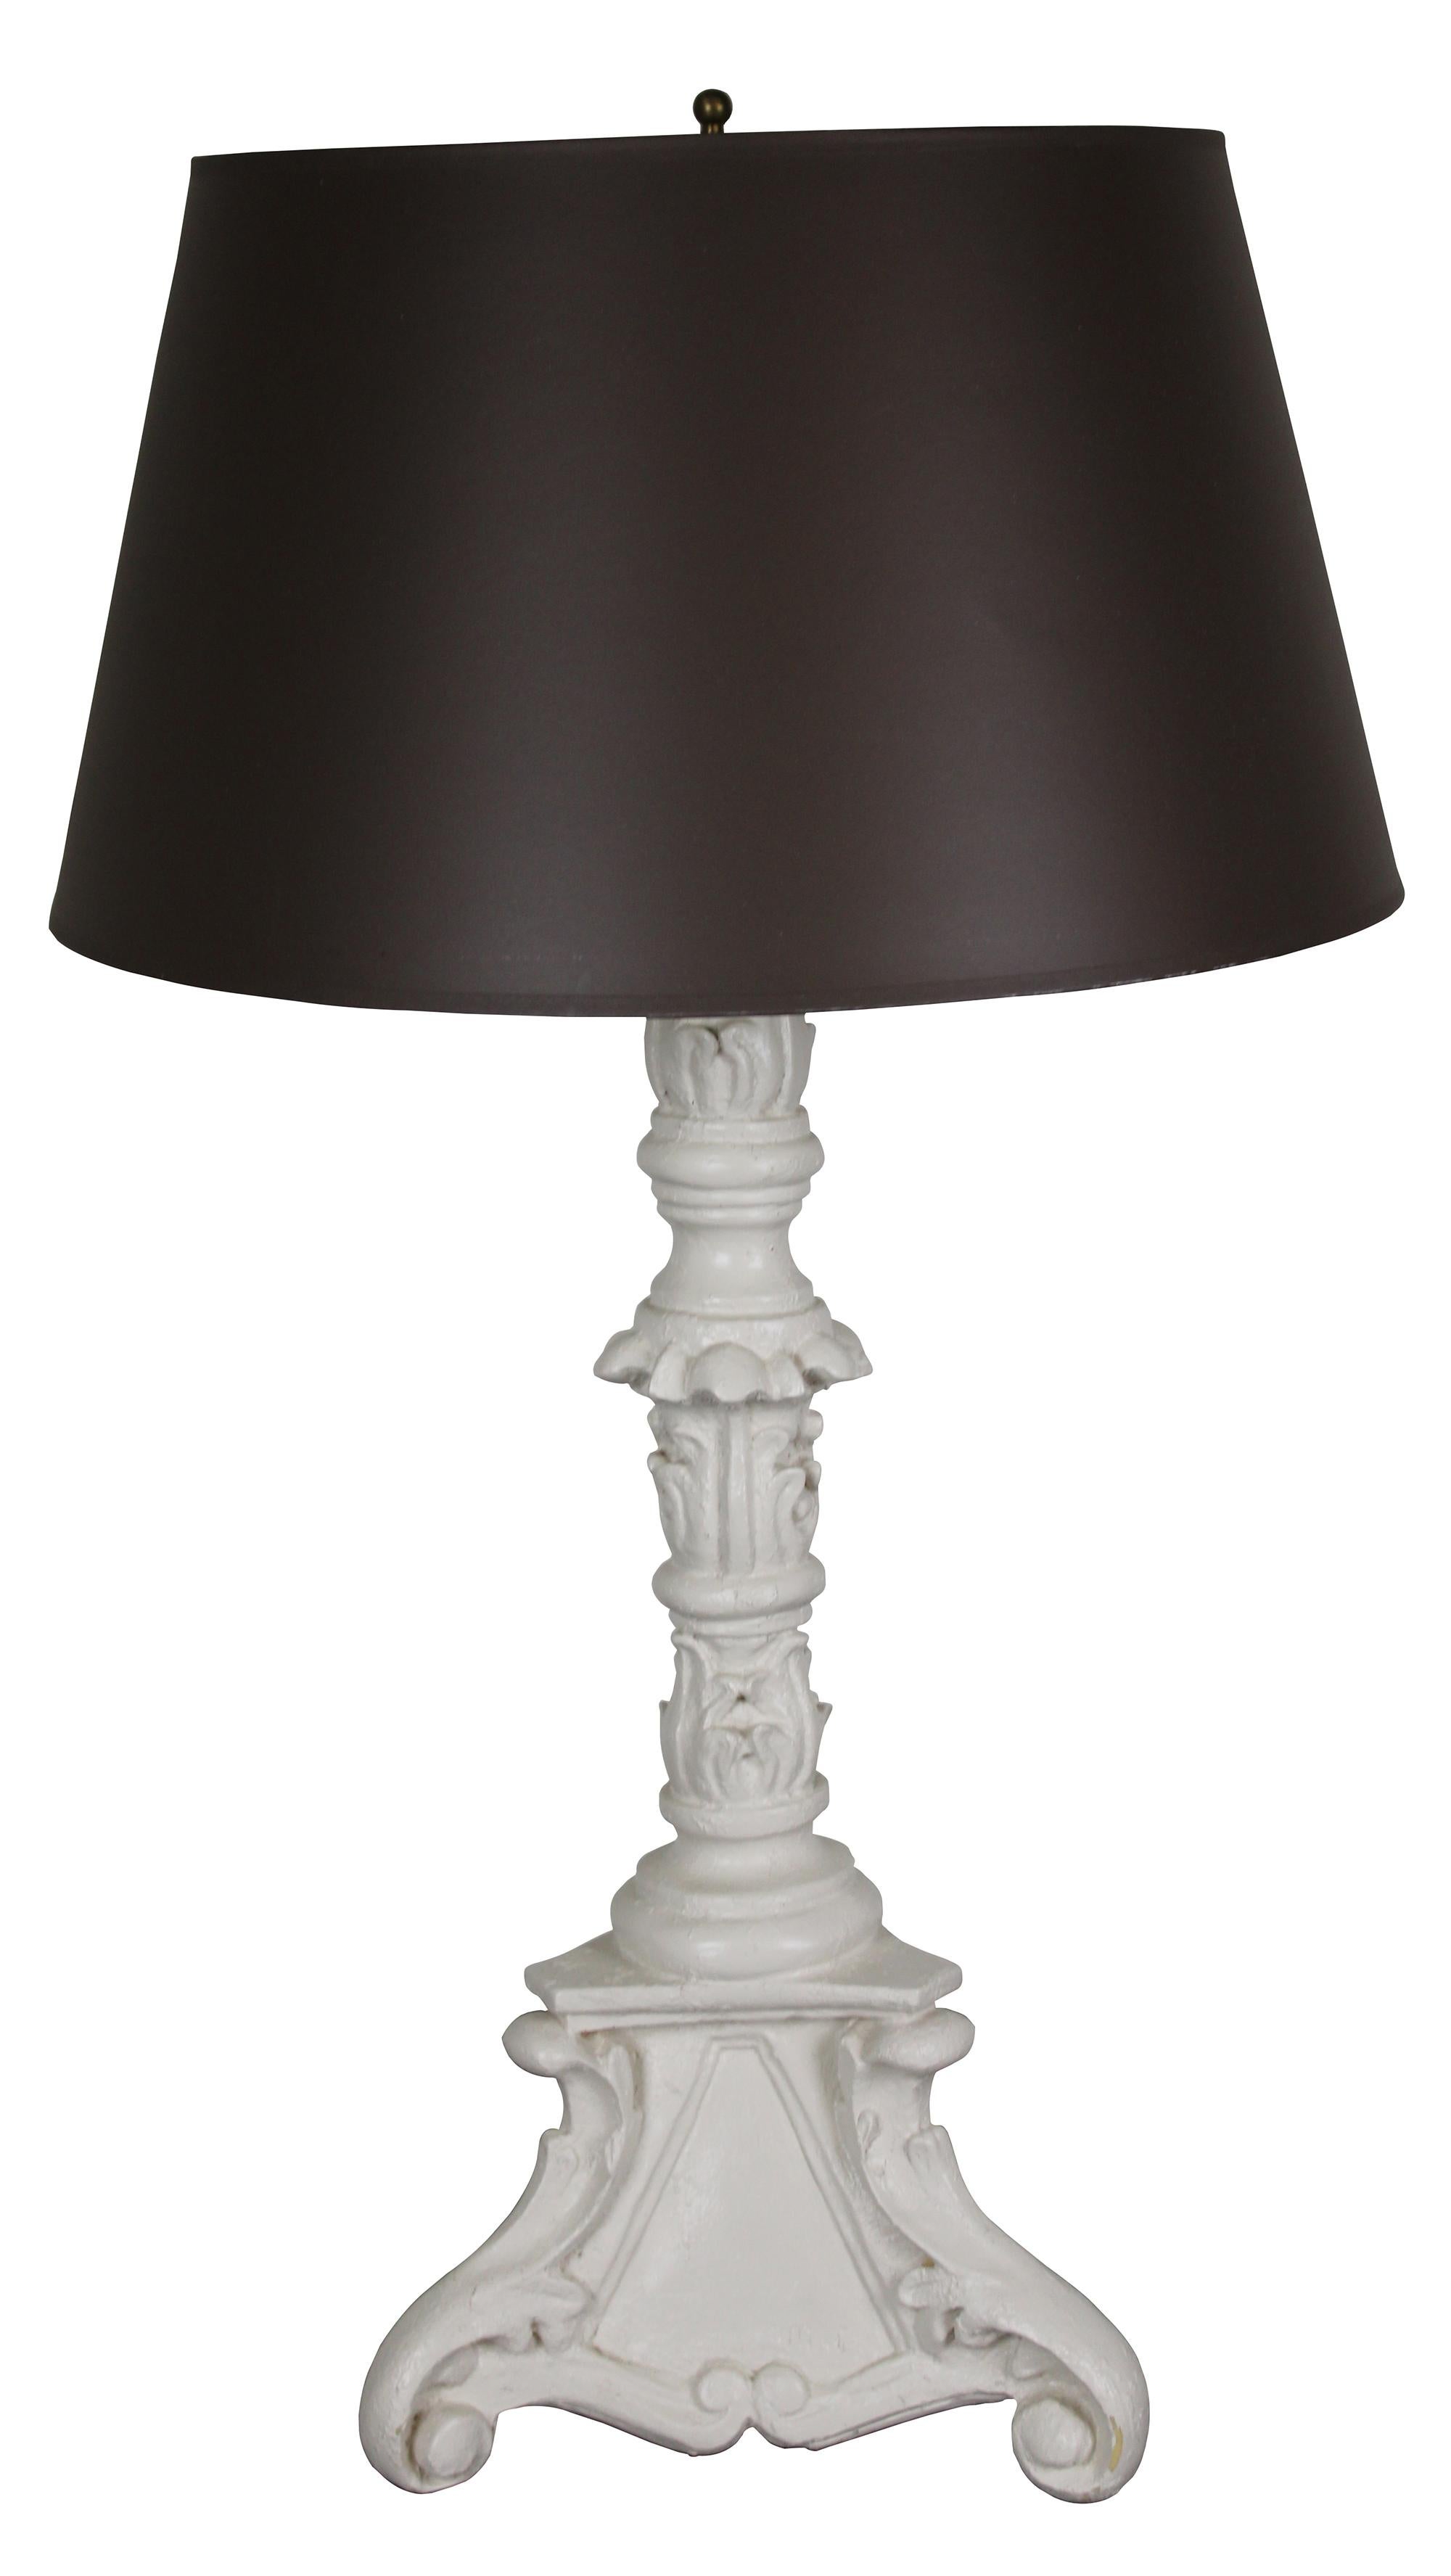 Vintage Barbara Cosgrove lampe. Il présente un style baroque avec une finition peinte en blanc, une base tripode à pied et un abat-jour noir. Mesure : 34